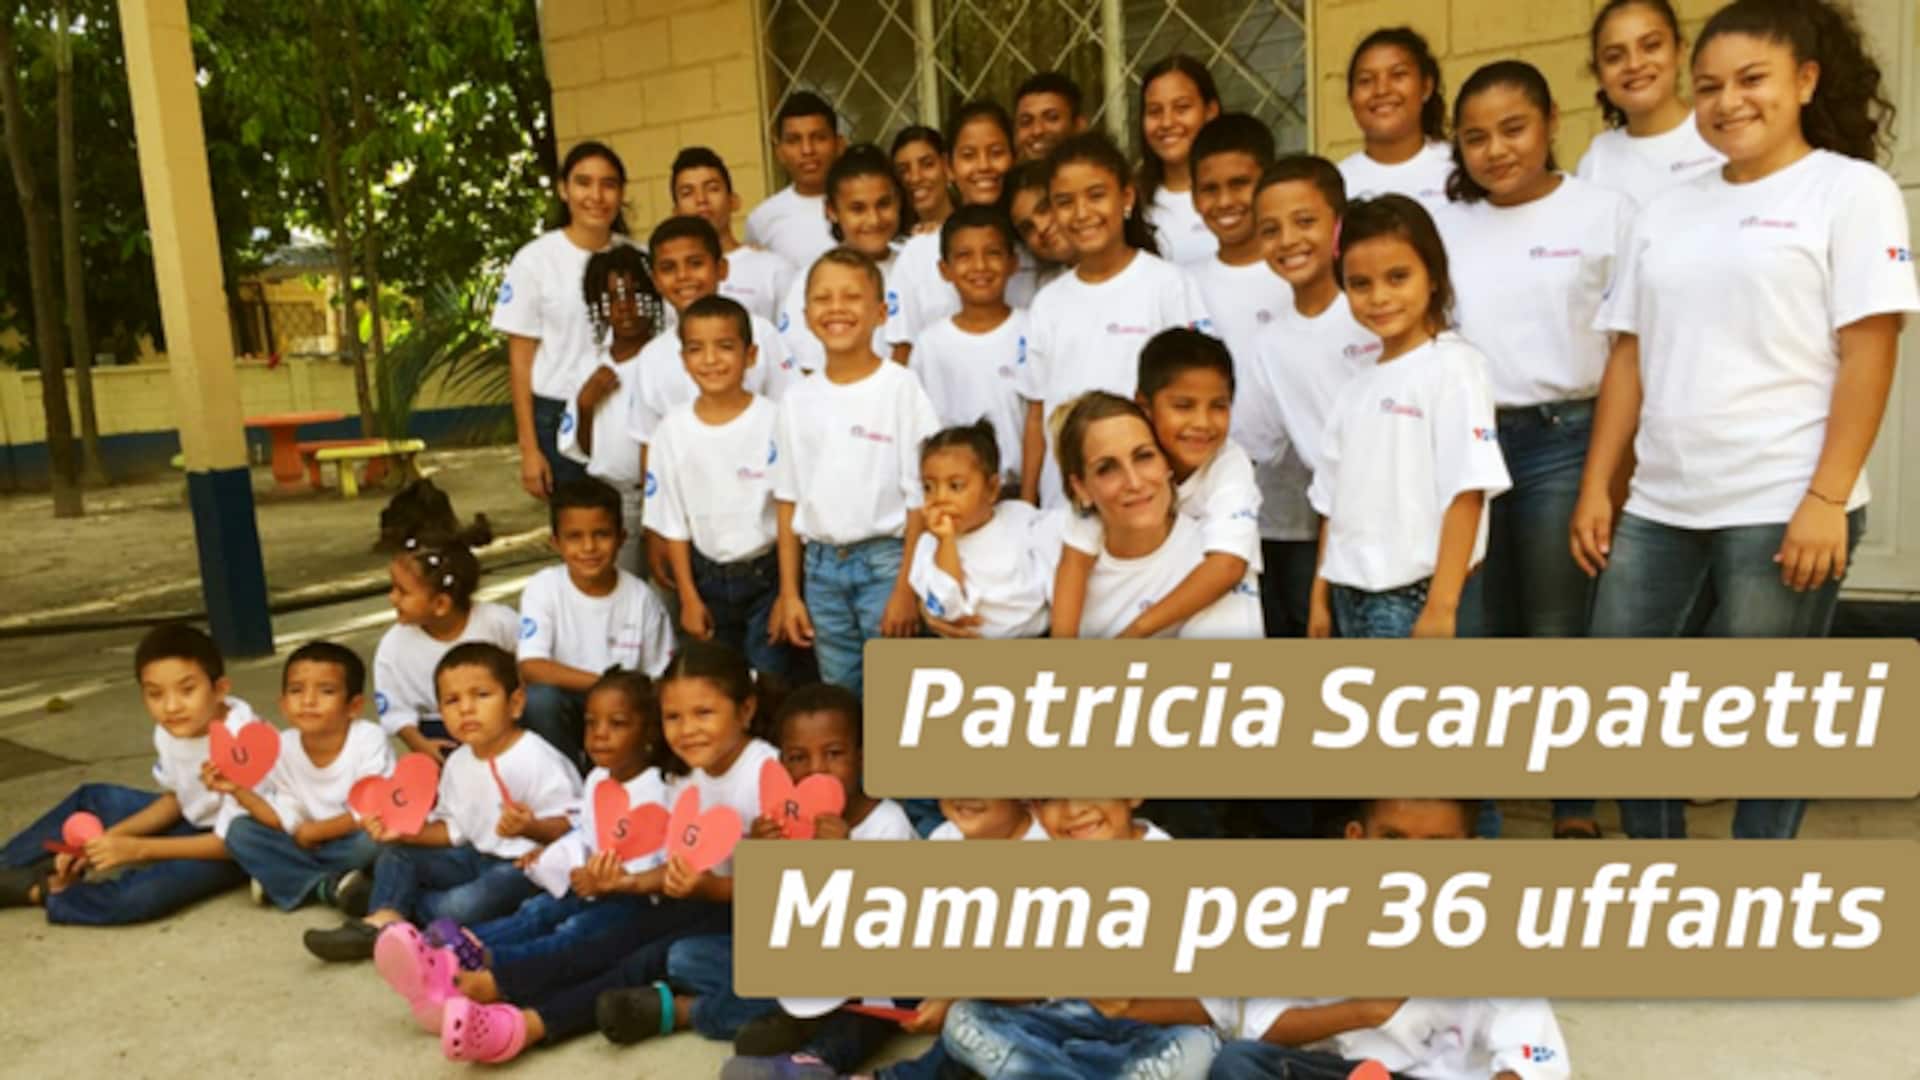 Patricia Scarpatetti - Mamma per 36 uffants